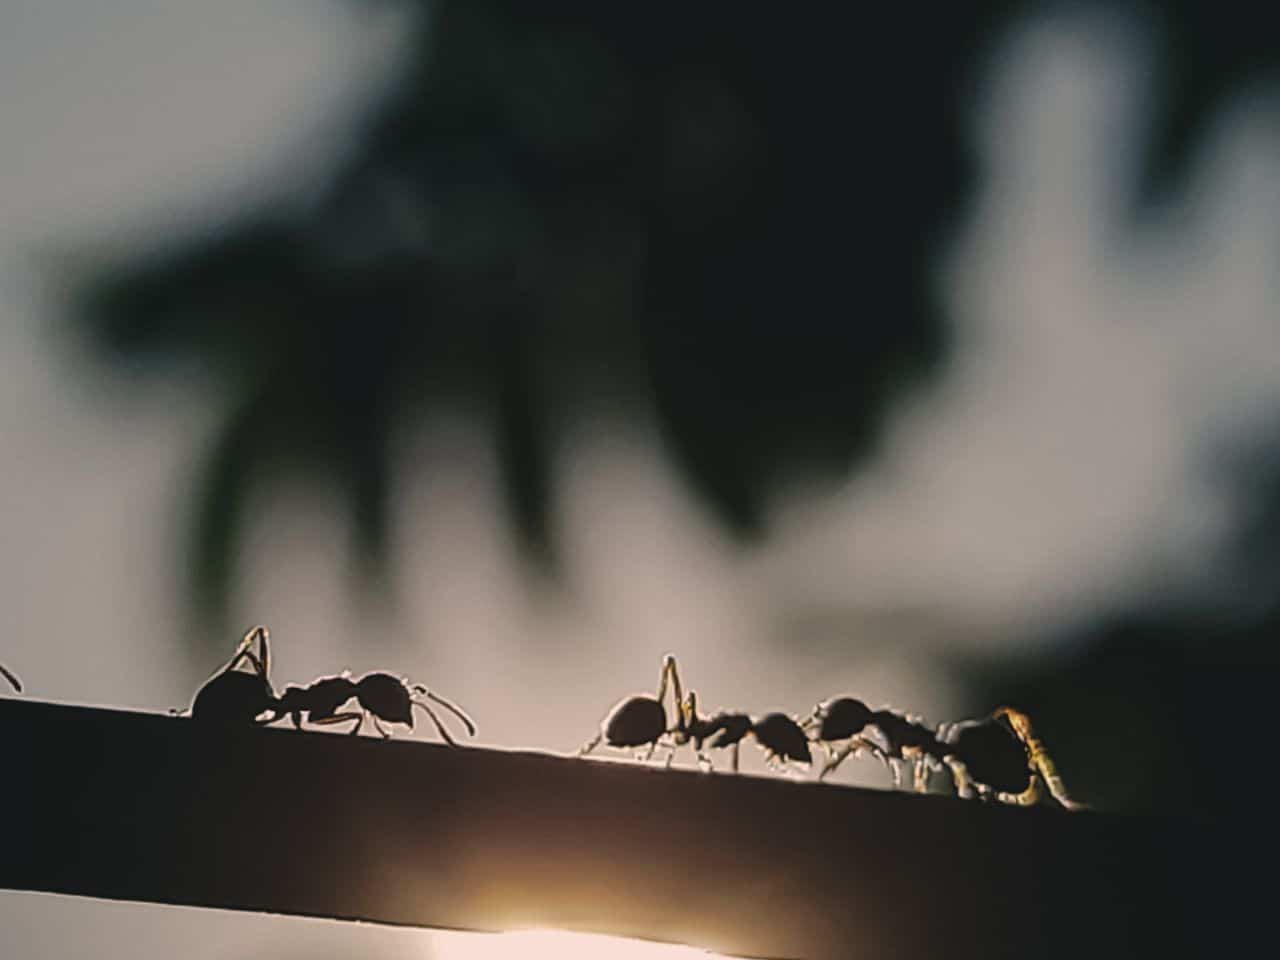 Ameisen auf Holz